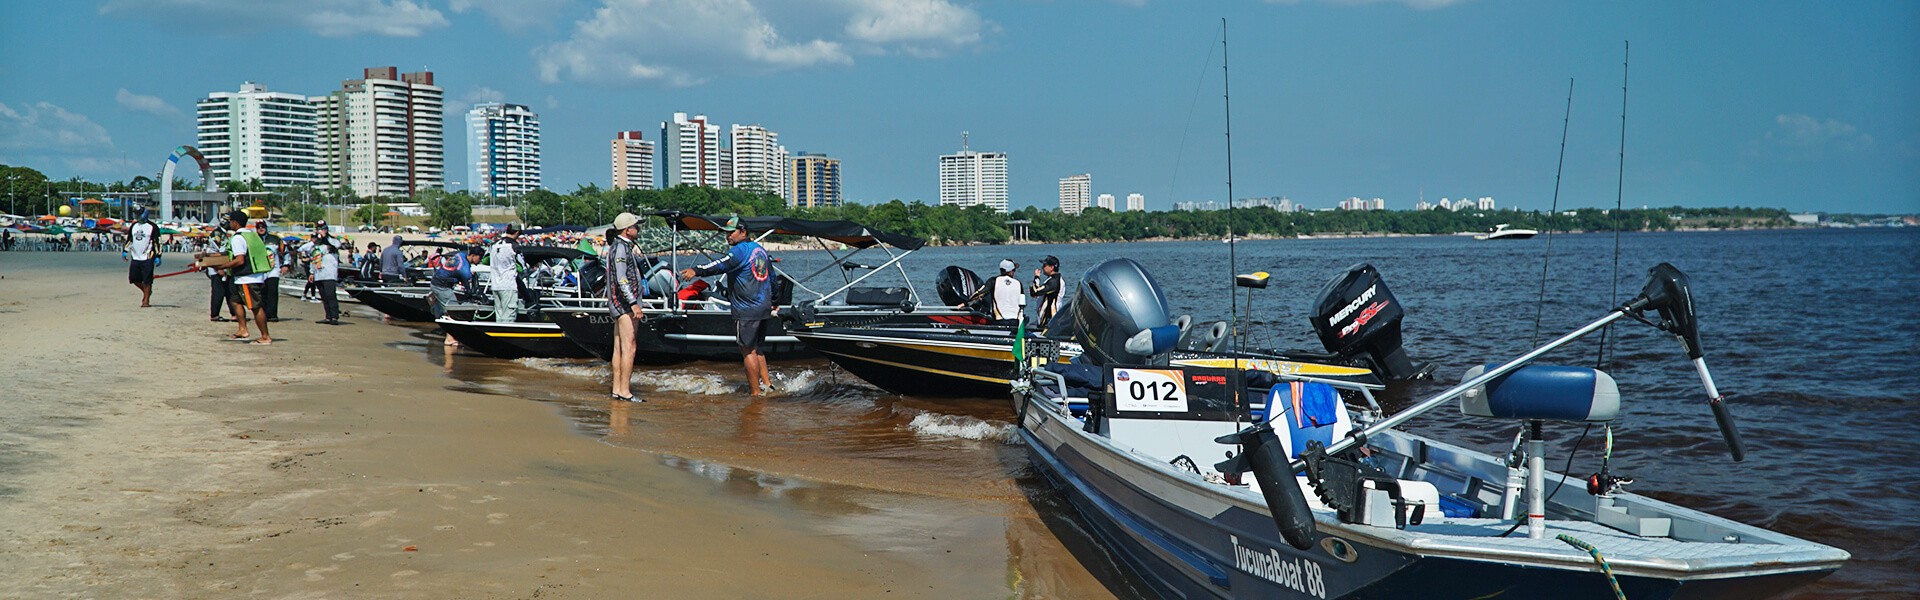 Confira os resultados dos principais torneios de pesca esportiva no Brasil